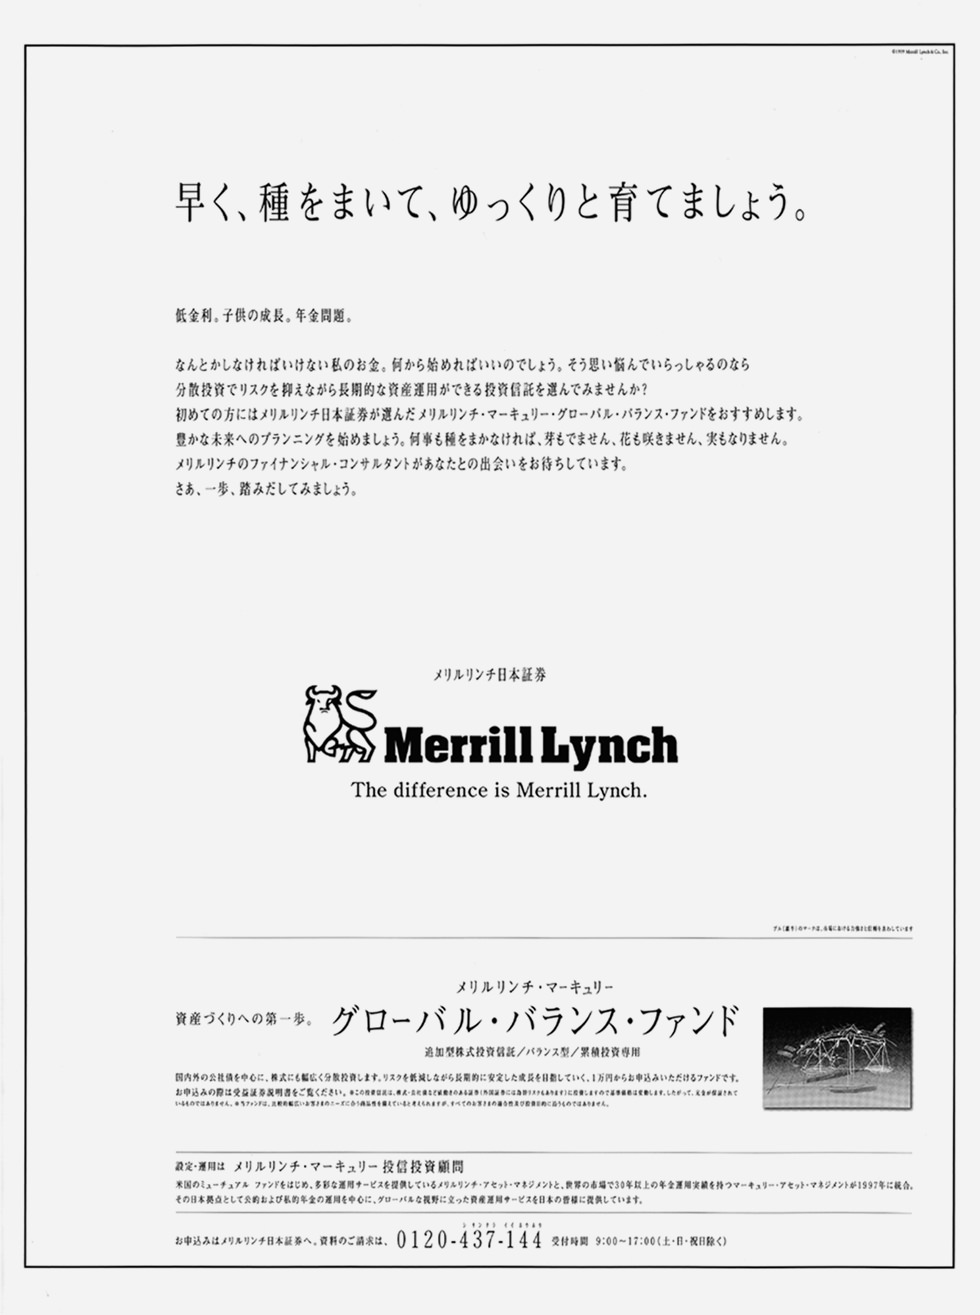 Merrill Lynch　メリルリンチ日本証券株式会社の新聞広告デザイン キャッチコピーは「メリルリンチ、ゆっくりと、お金持ちになりましょう」